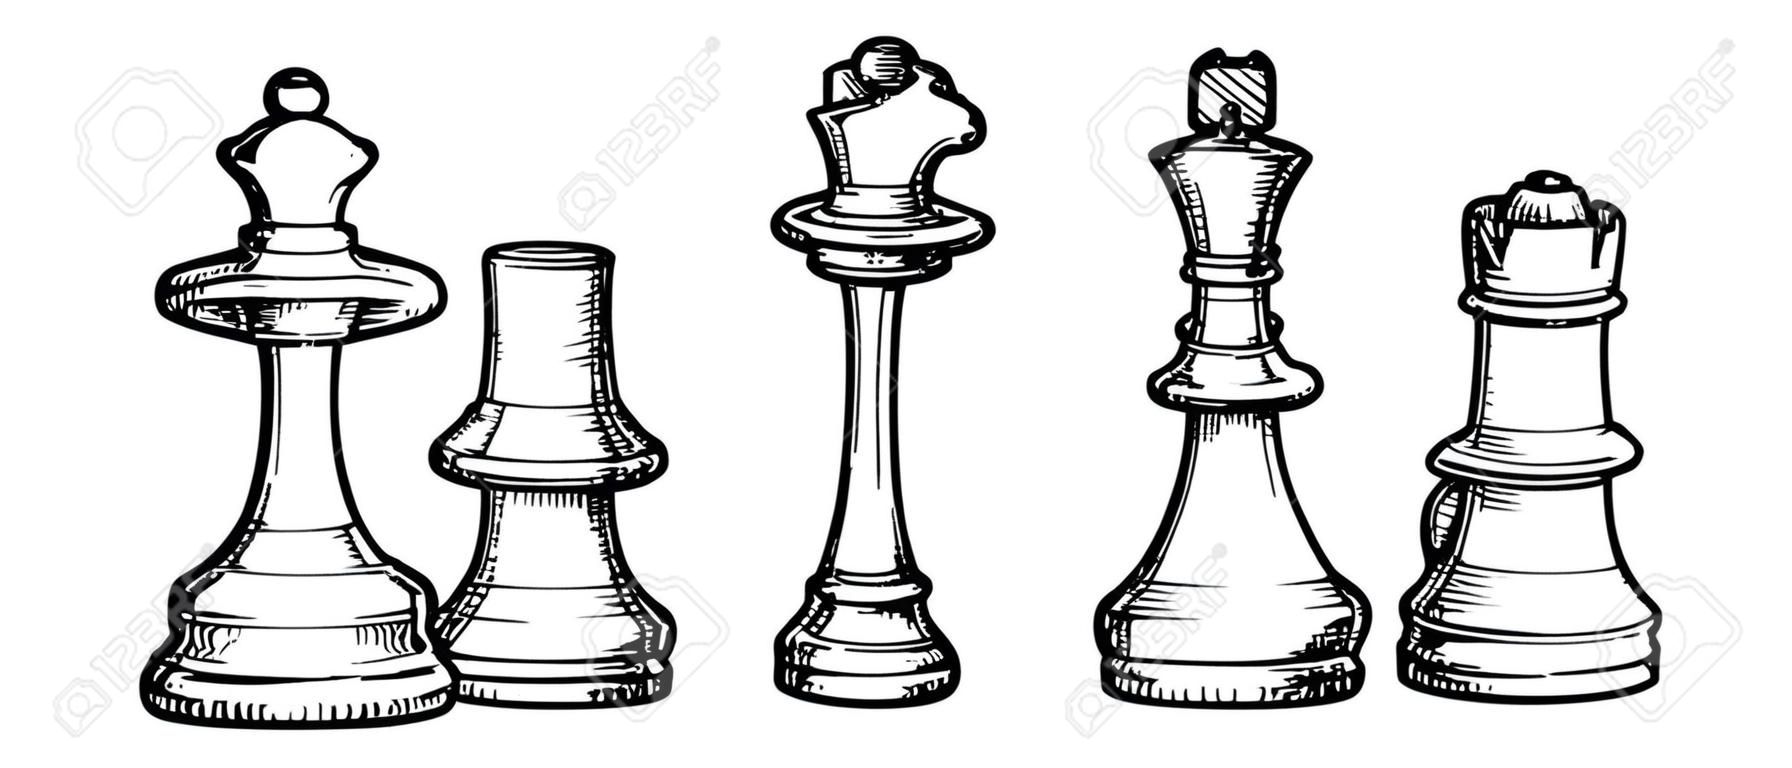 Vector ilustración en blanco y negro de ajedrez estilizado como grabado